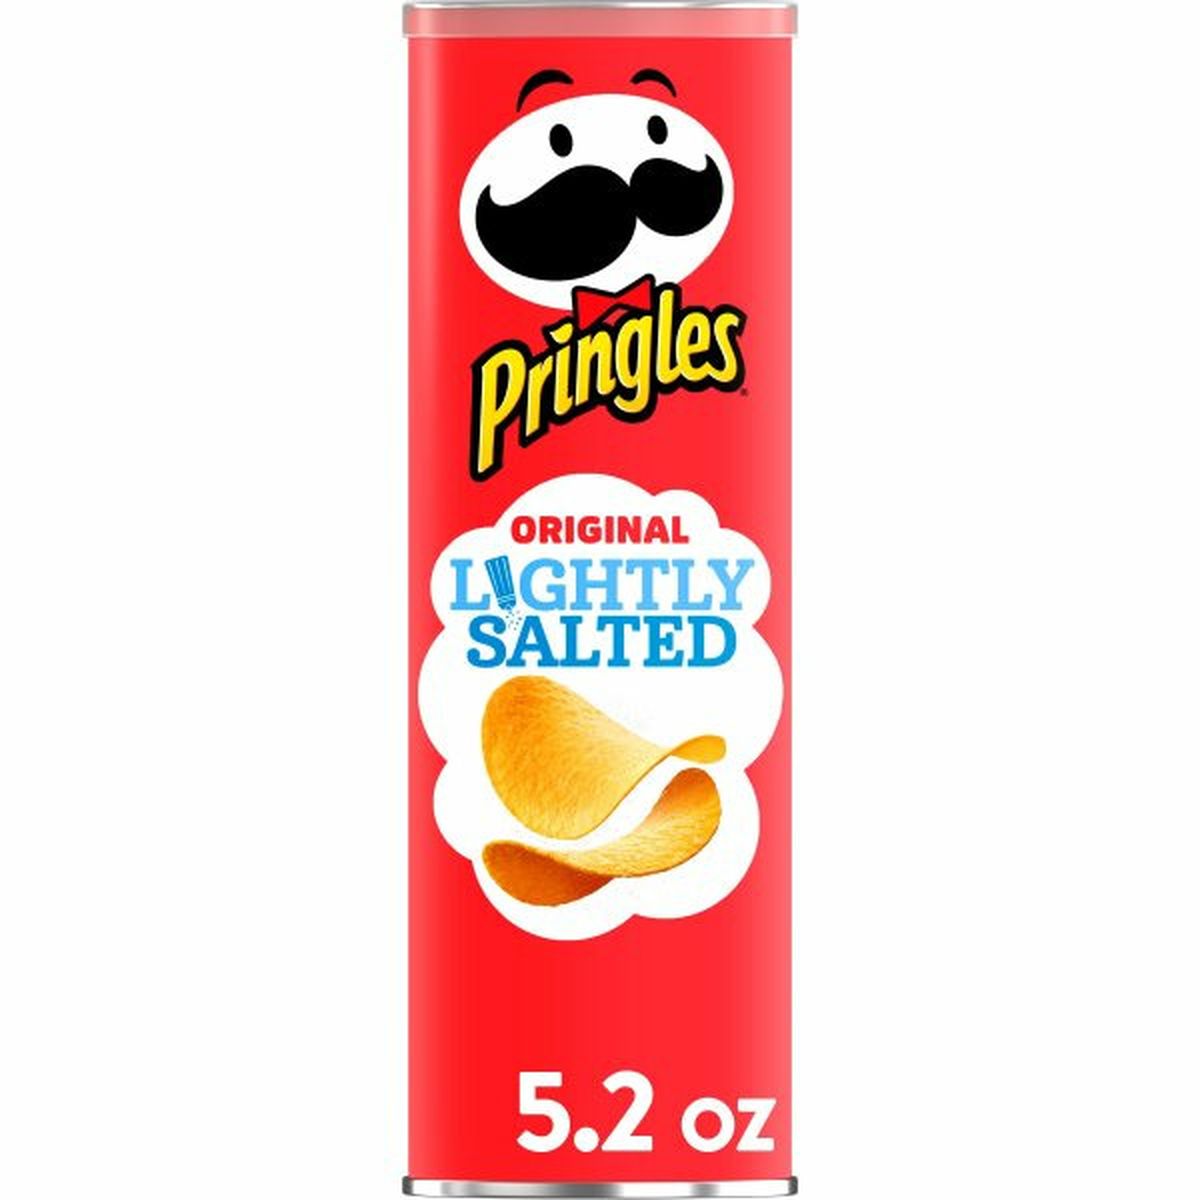 Calories in Pringles Salty Snacks Pringles Potato Crisps Chips, Lightly Salted Original, Snacks On The Go, 5.2oz